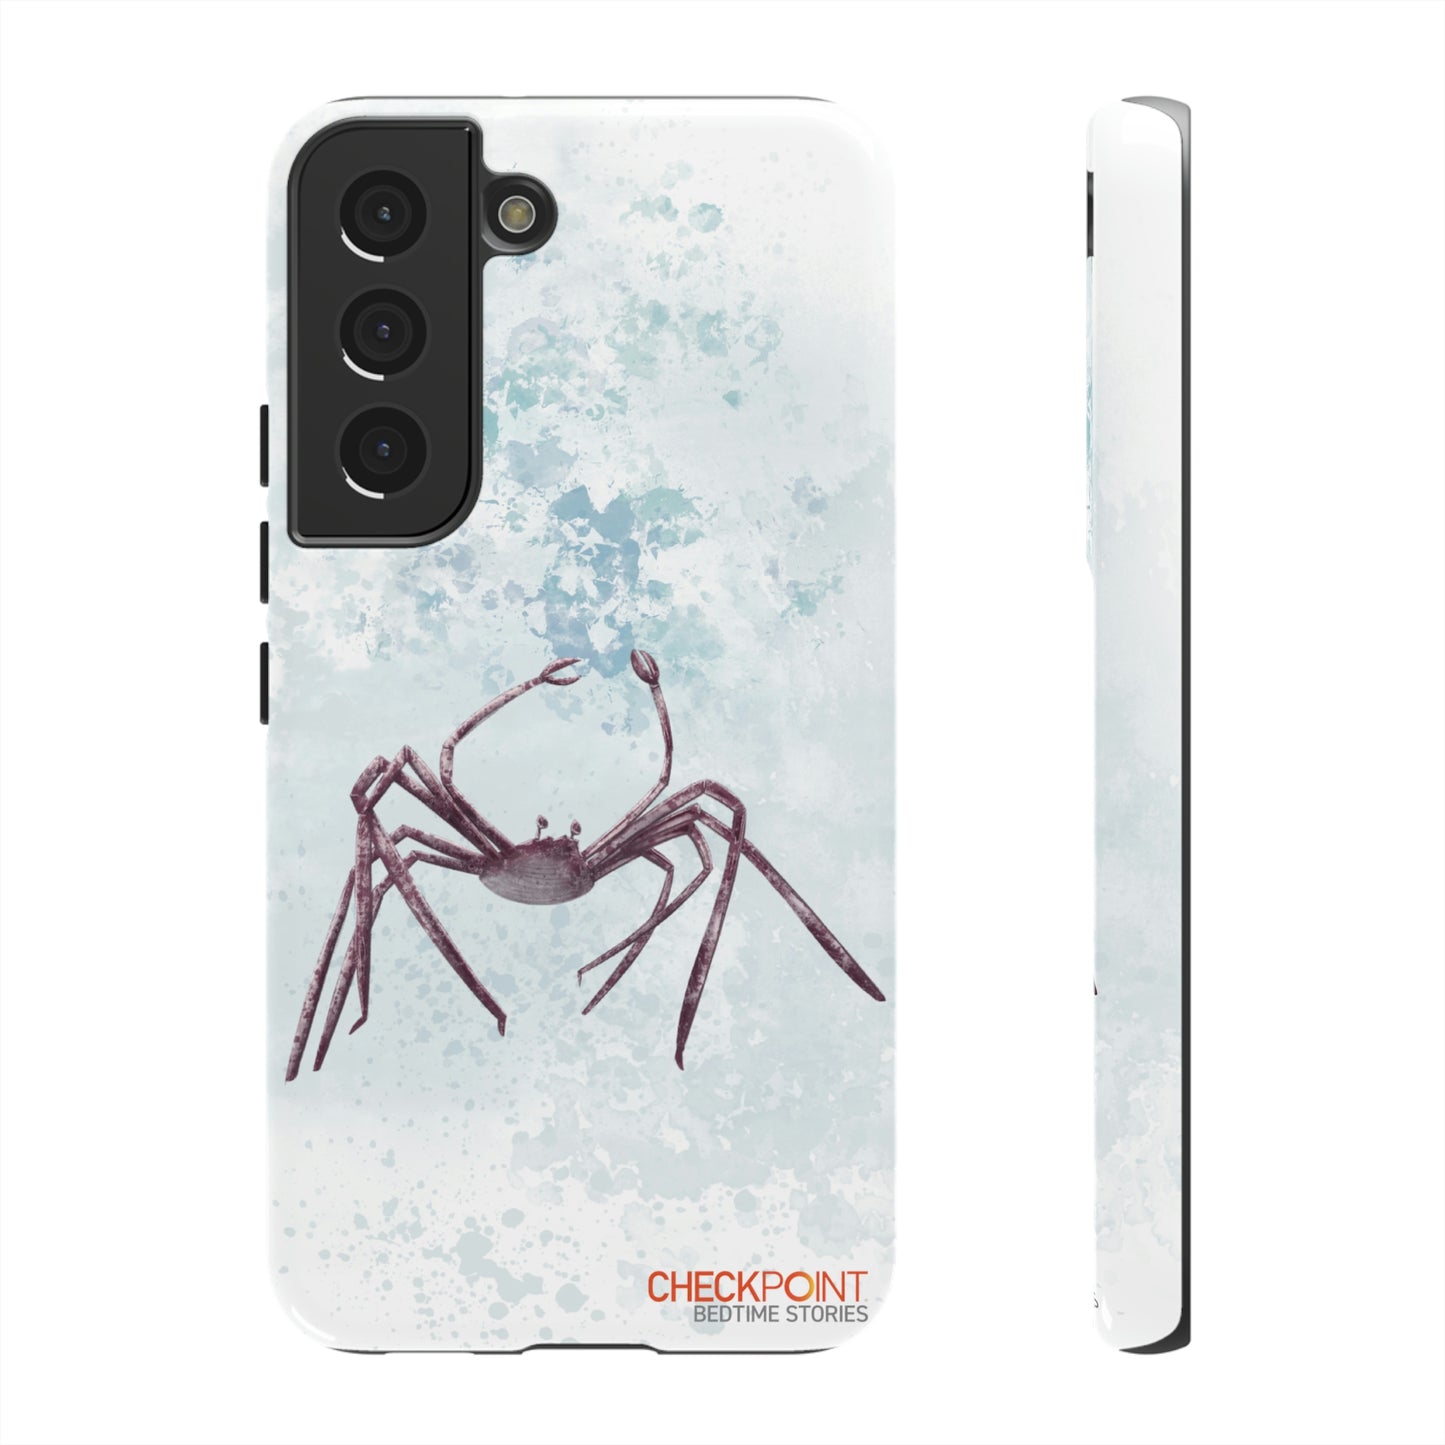 The Spider Crab Tough Phone Case